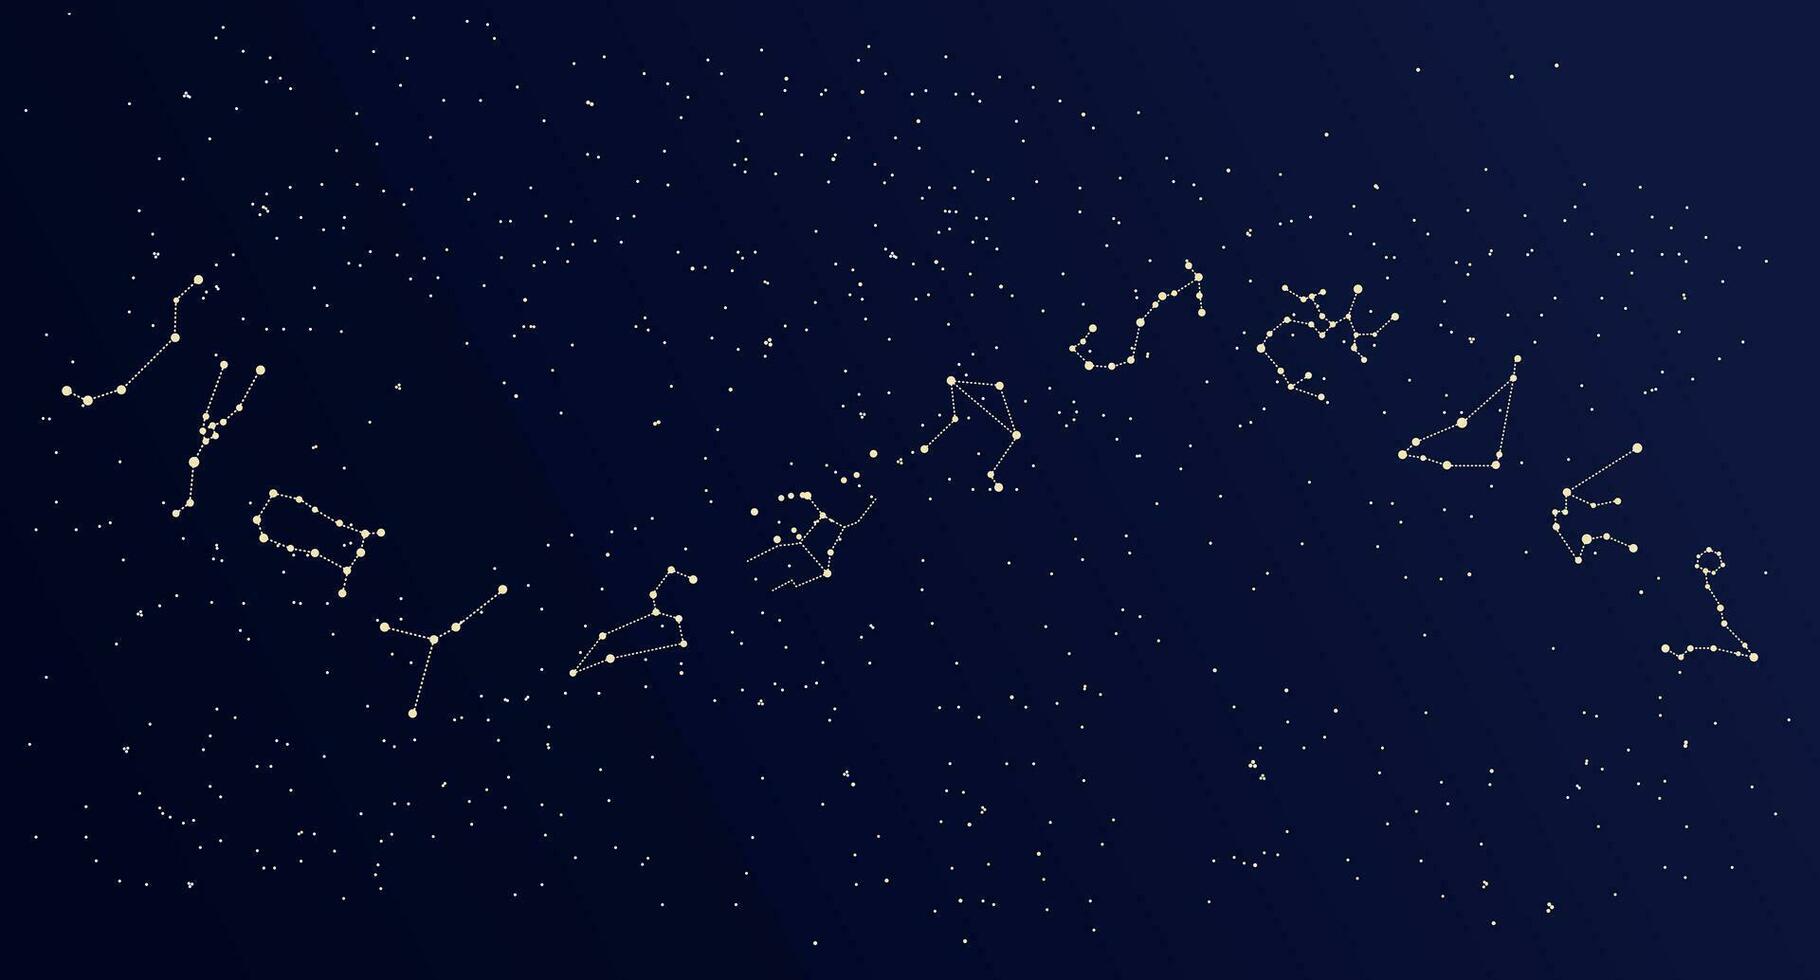 mapa de constelaciones, cielo cósmico místico con constelaciones y estrellas, fondo de nebulosa, galaxia azul. ilustración, póster, vector